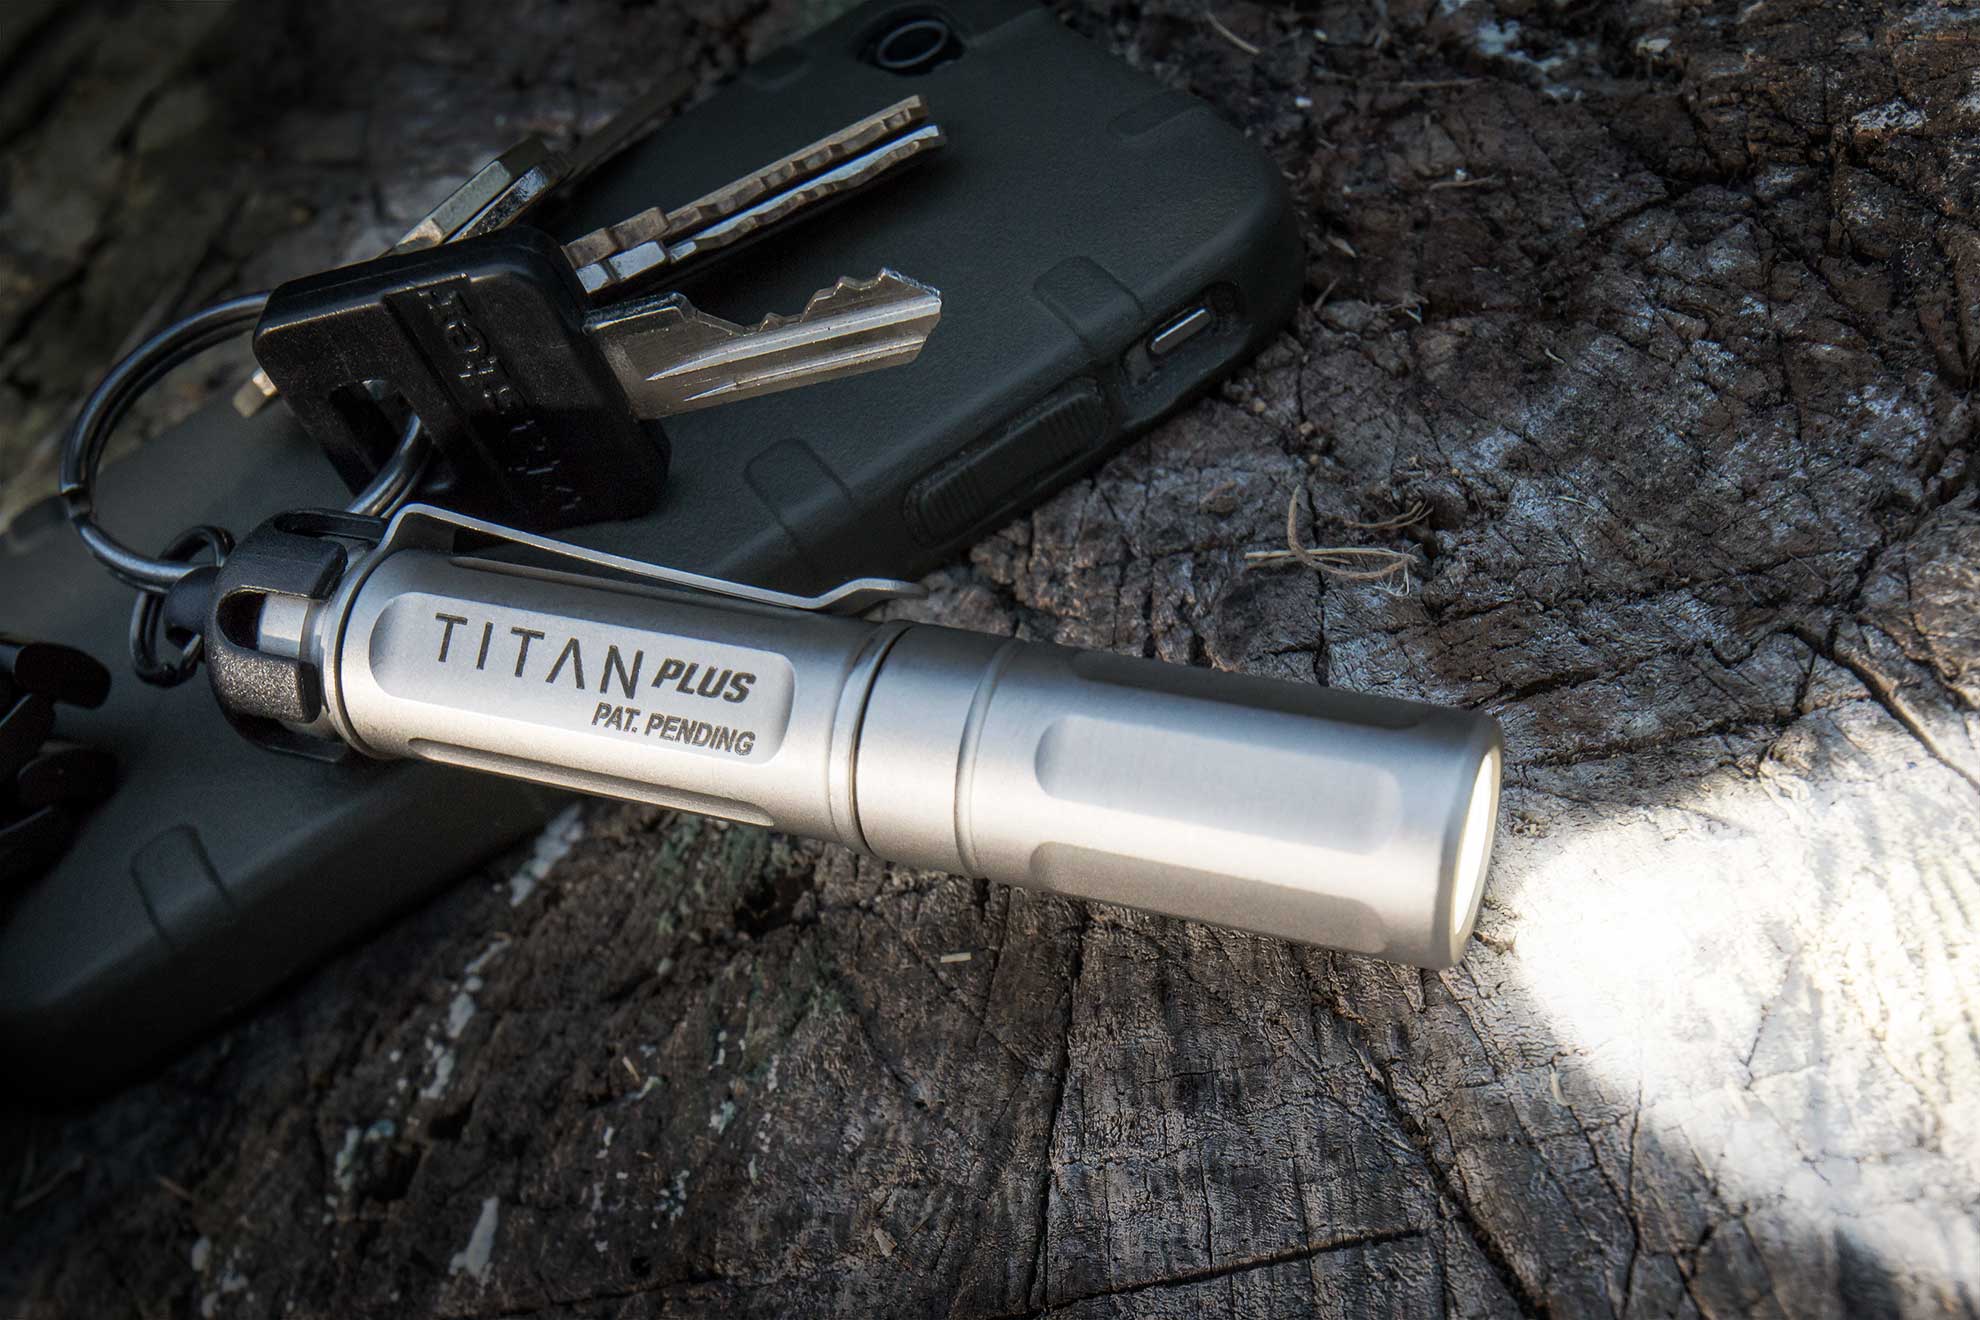 SureFire Titan Plus keychain flashlight with keys on log